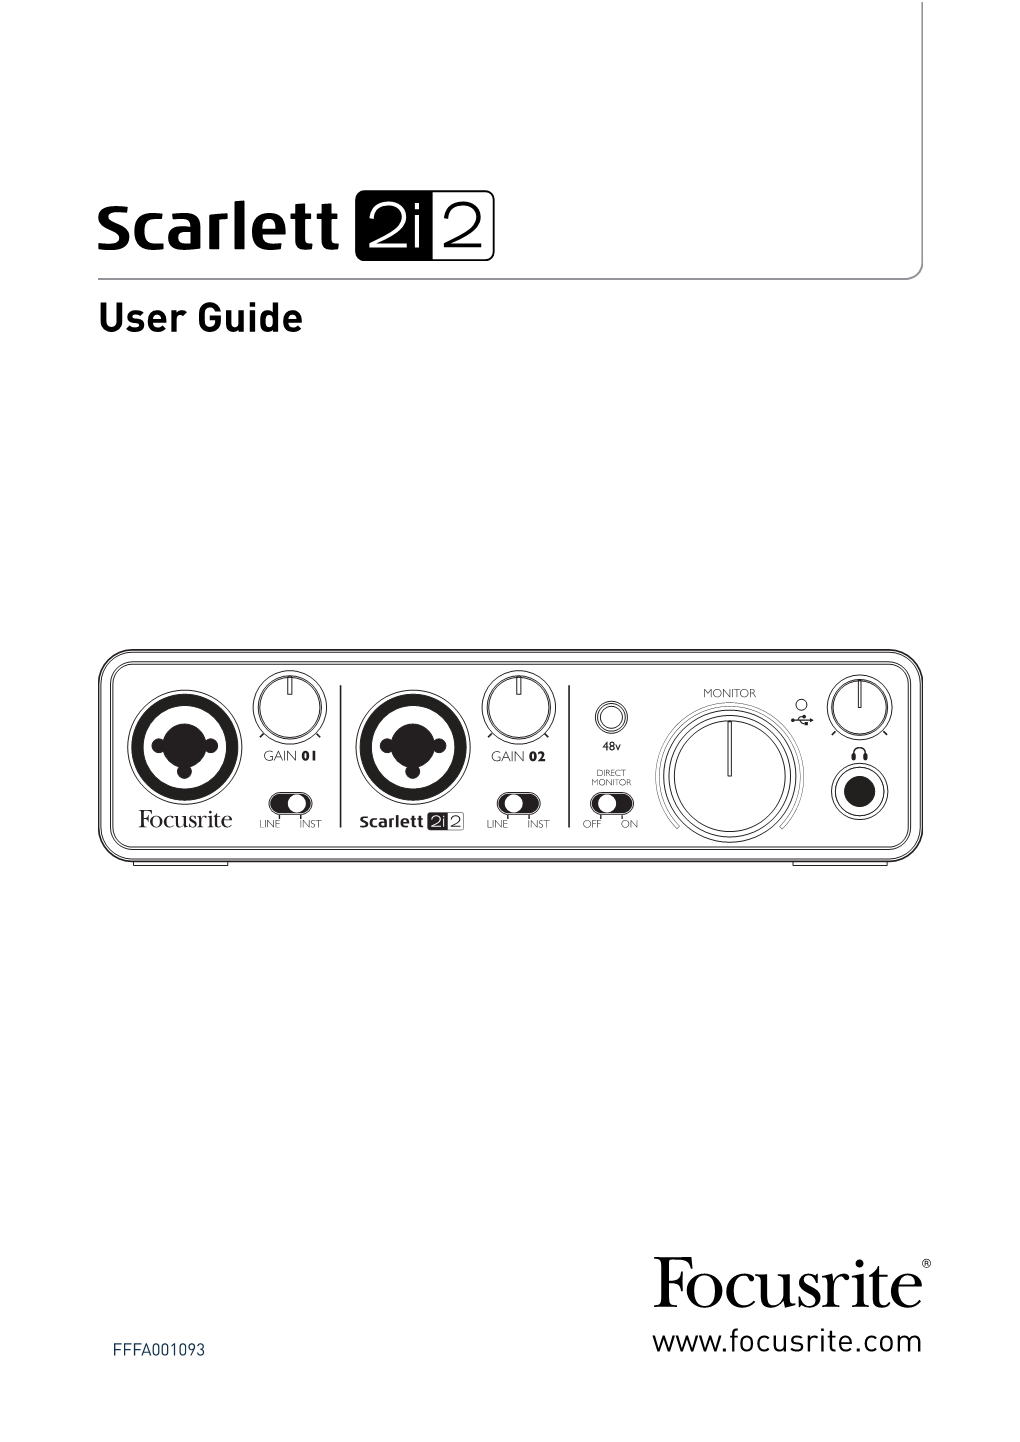 Scarlett-2I2-User-Guide-V2.Pdf